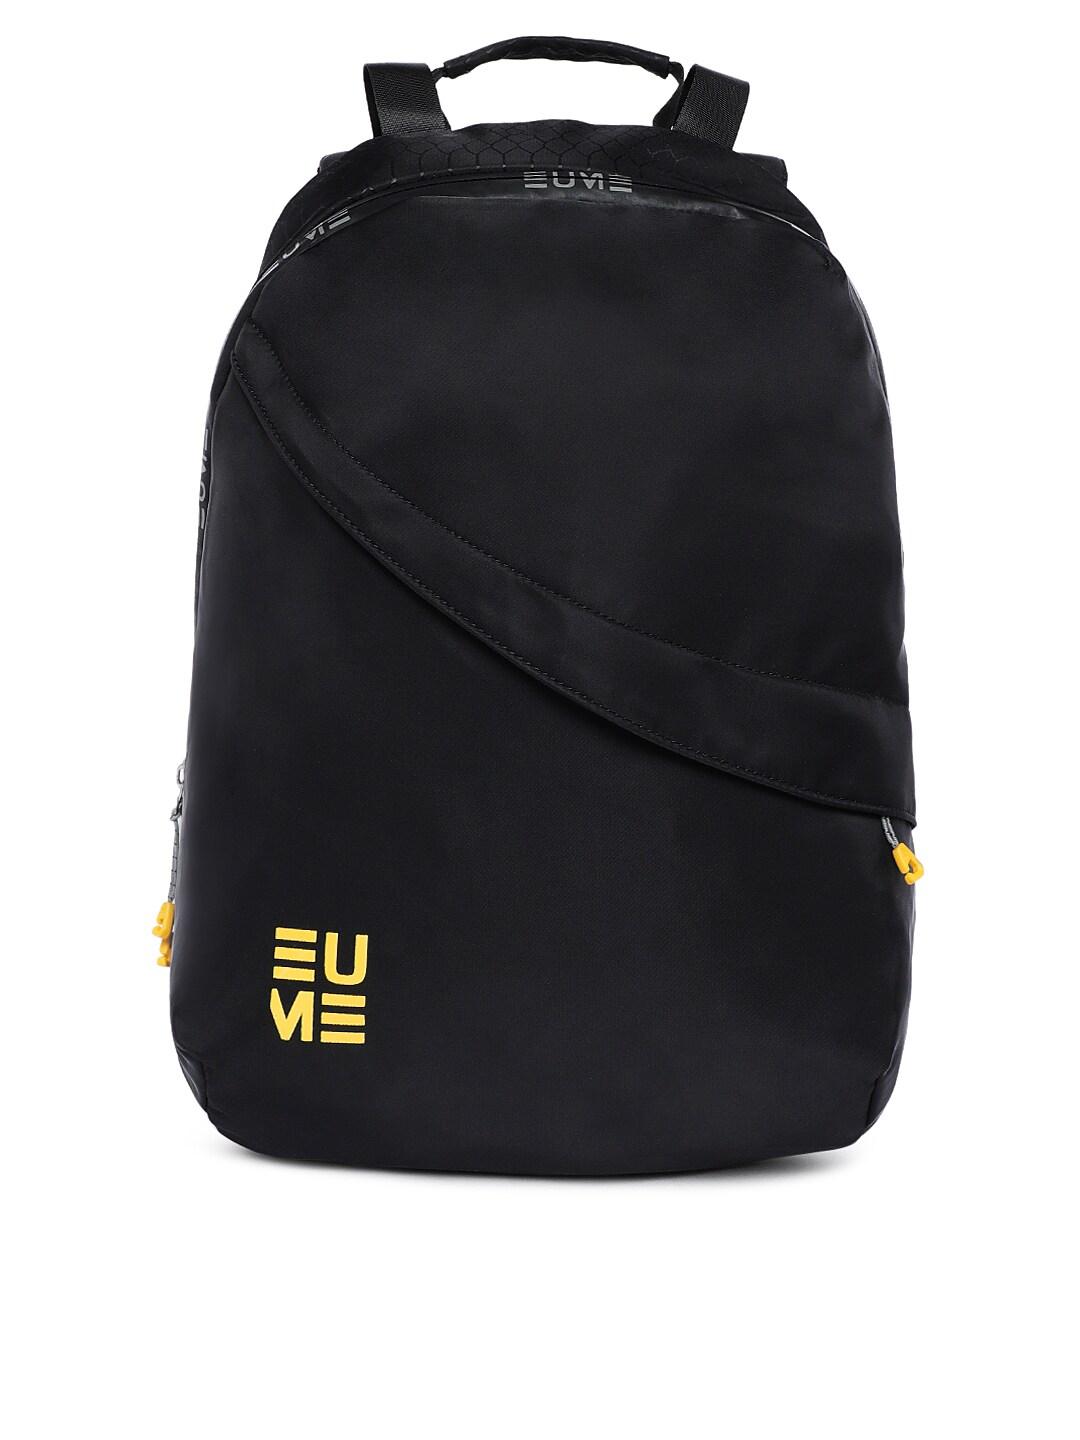 eume-unisex-black-solid-backpack